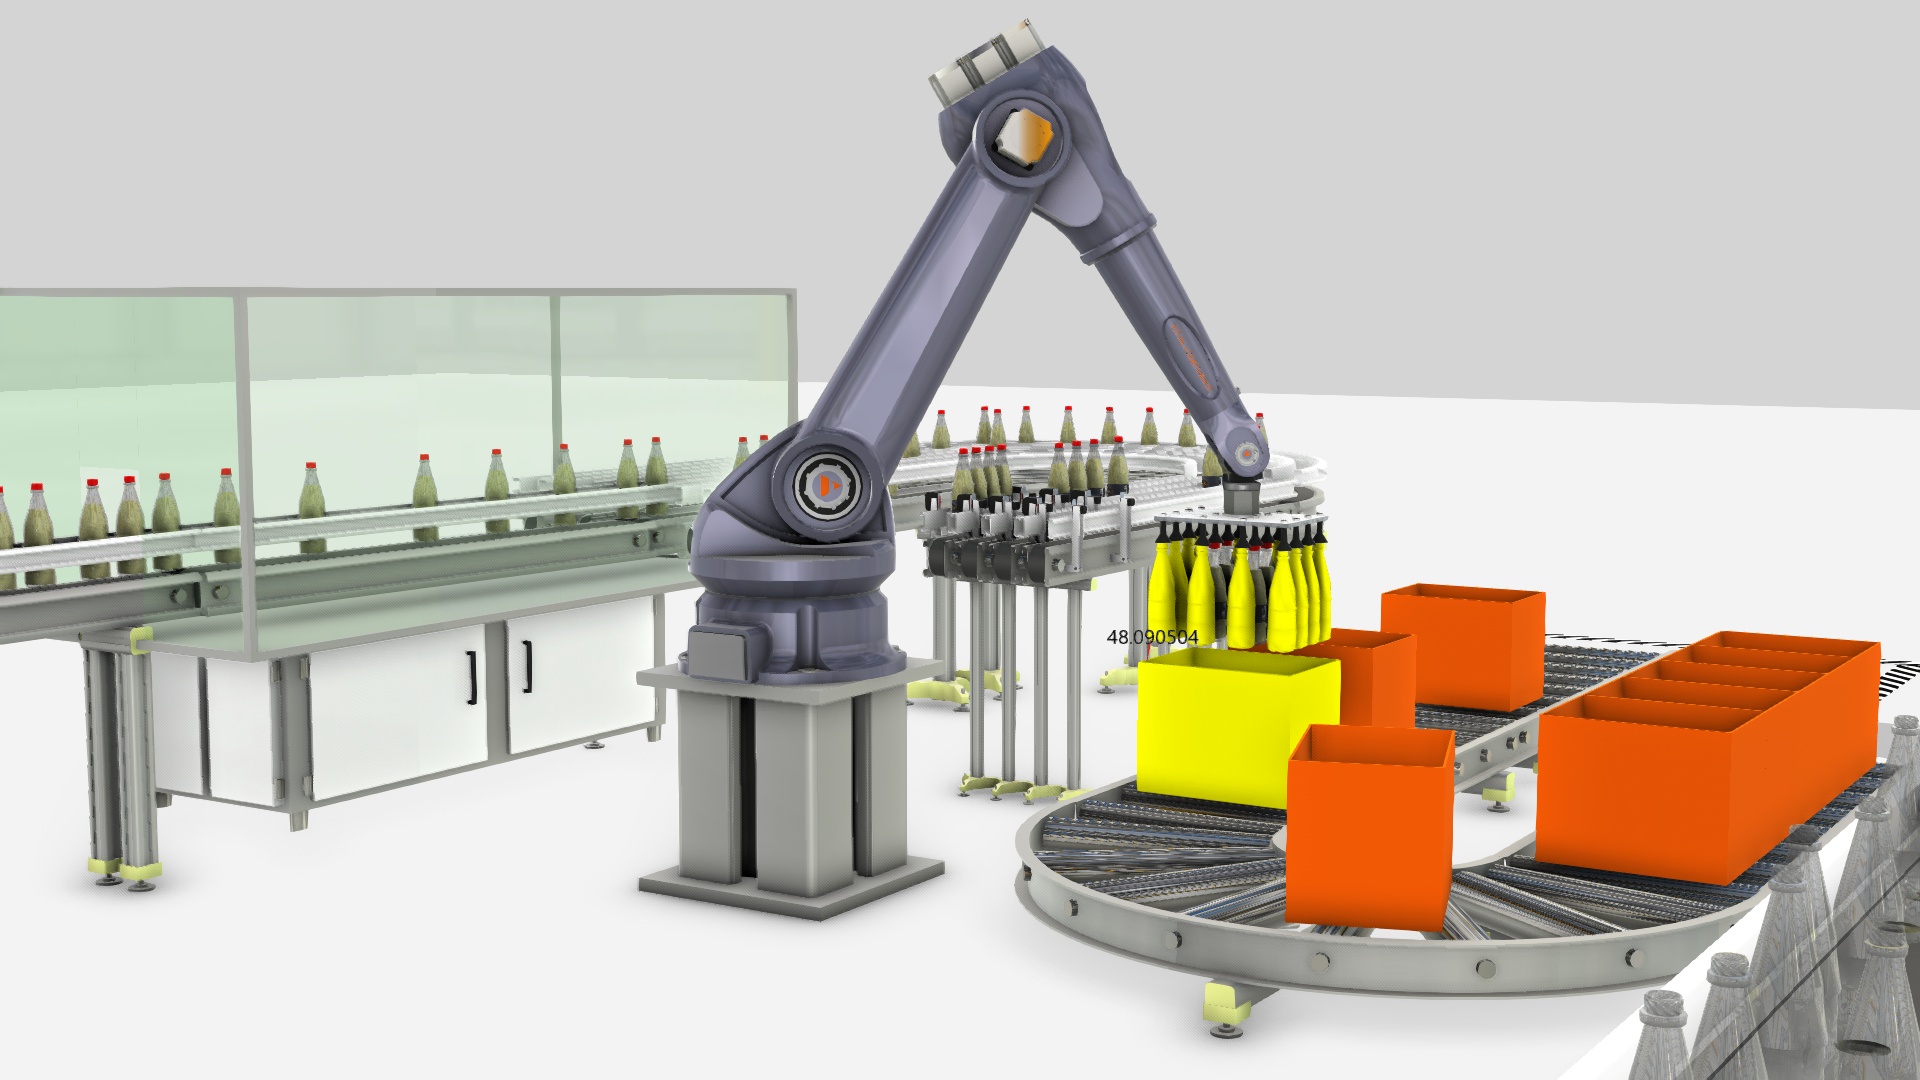 Industry applications. Автоматизация и роботизация технологических процессов. Роботизация производственных процессов. Механизация, автоматизация, роботизация. Автоматизации и роботизация в строительстве.